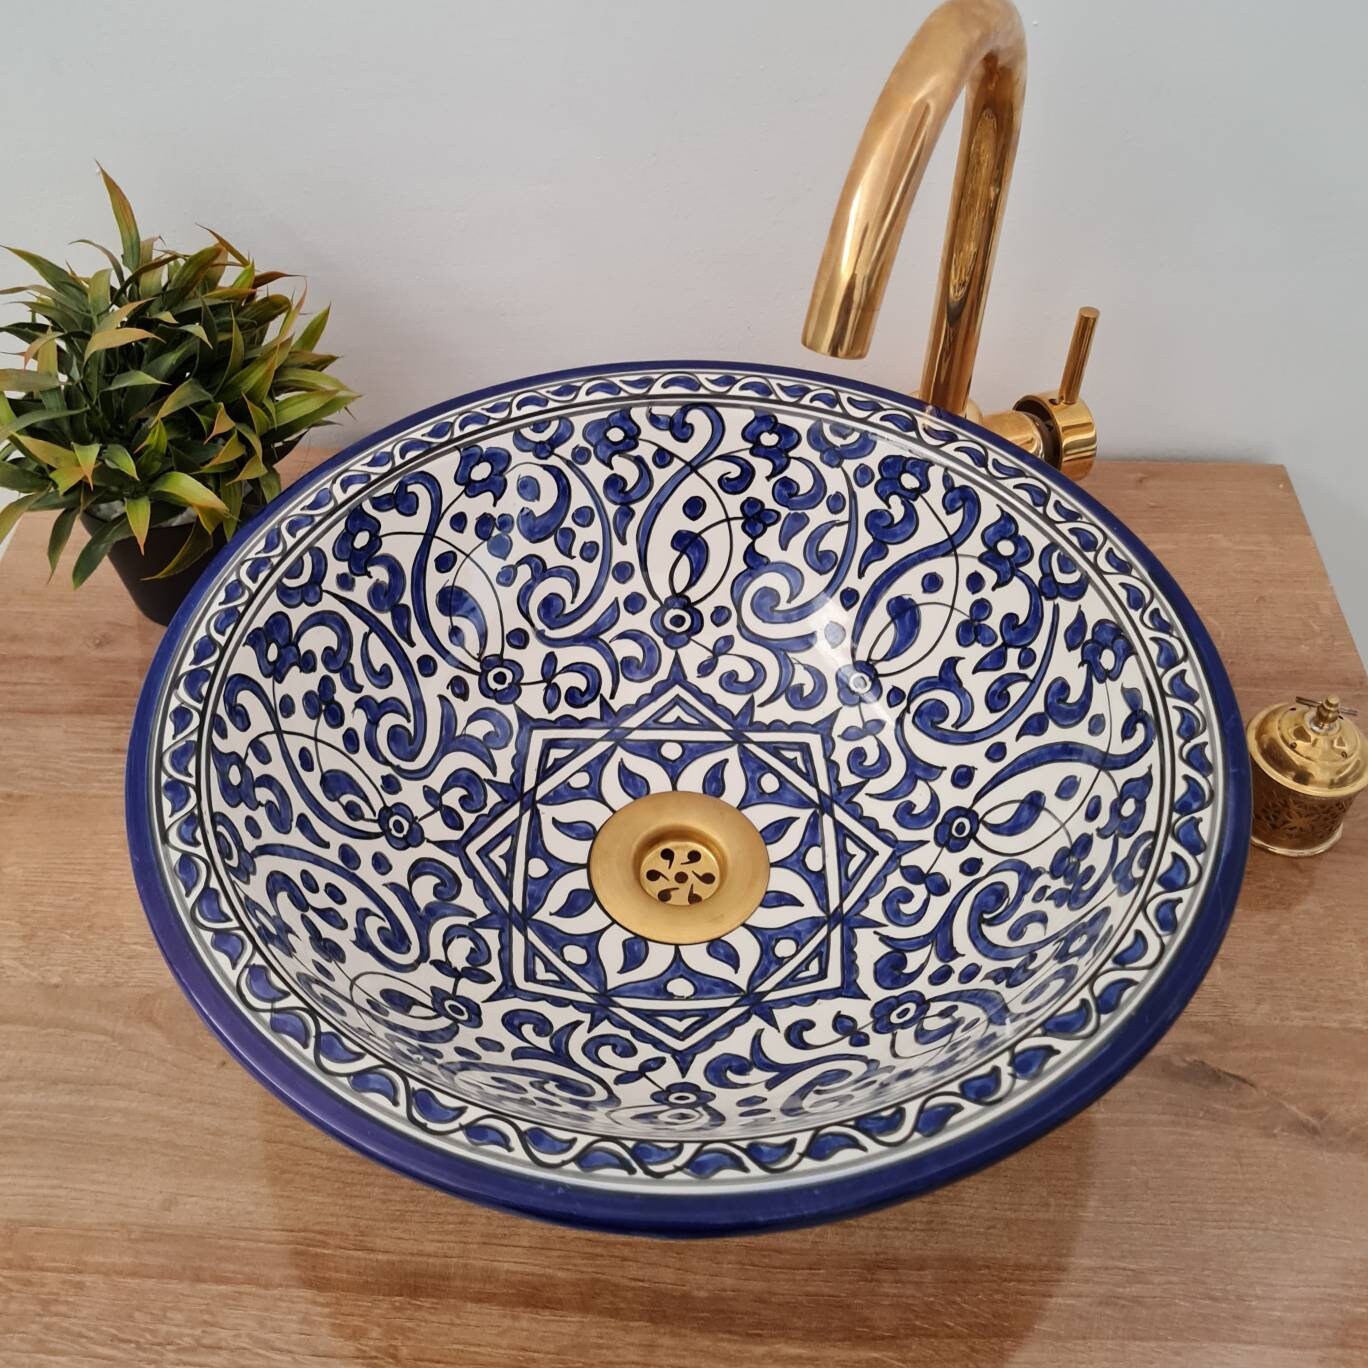 Moroccan sink | moroccan ceramic sink | bathroom sink | moroccan bathroom basin | cloakroom basin | Bleu sink #169